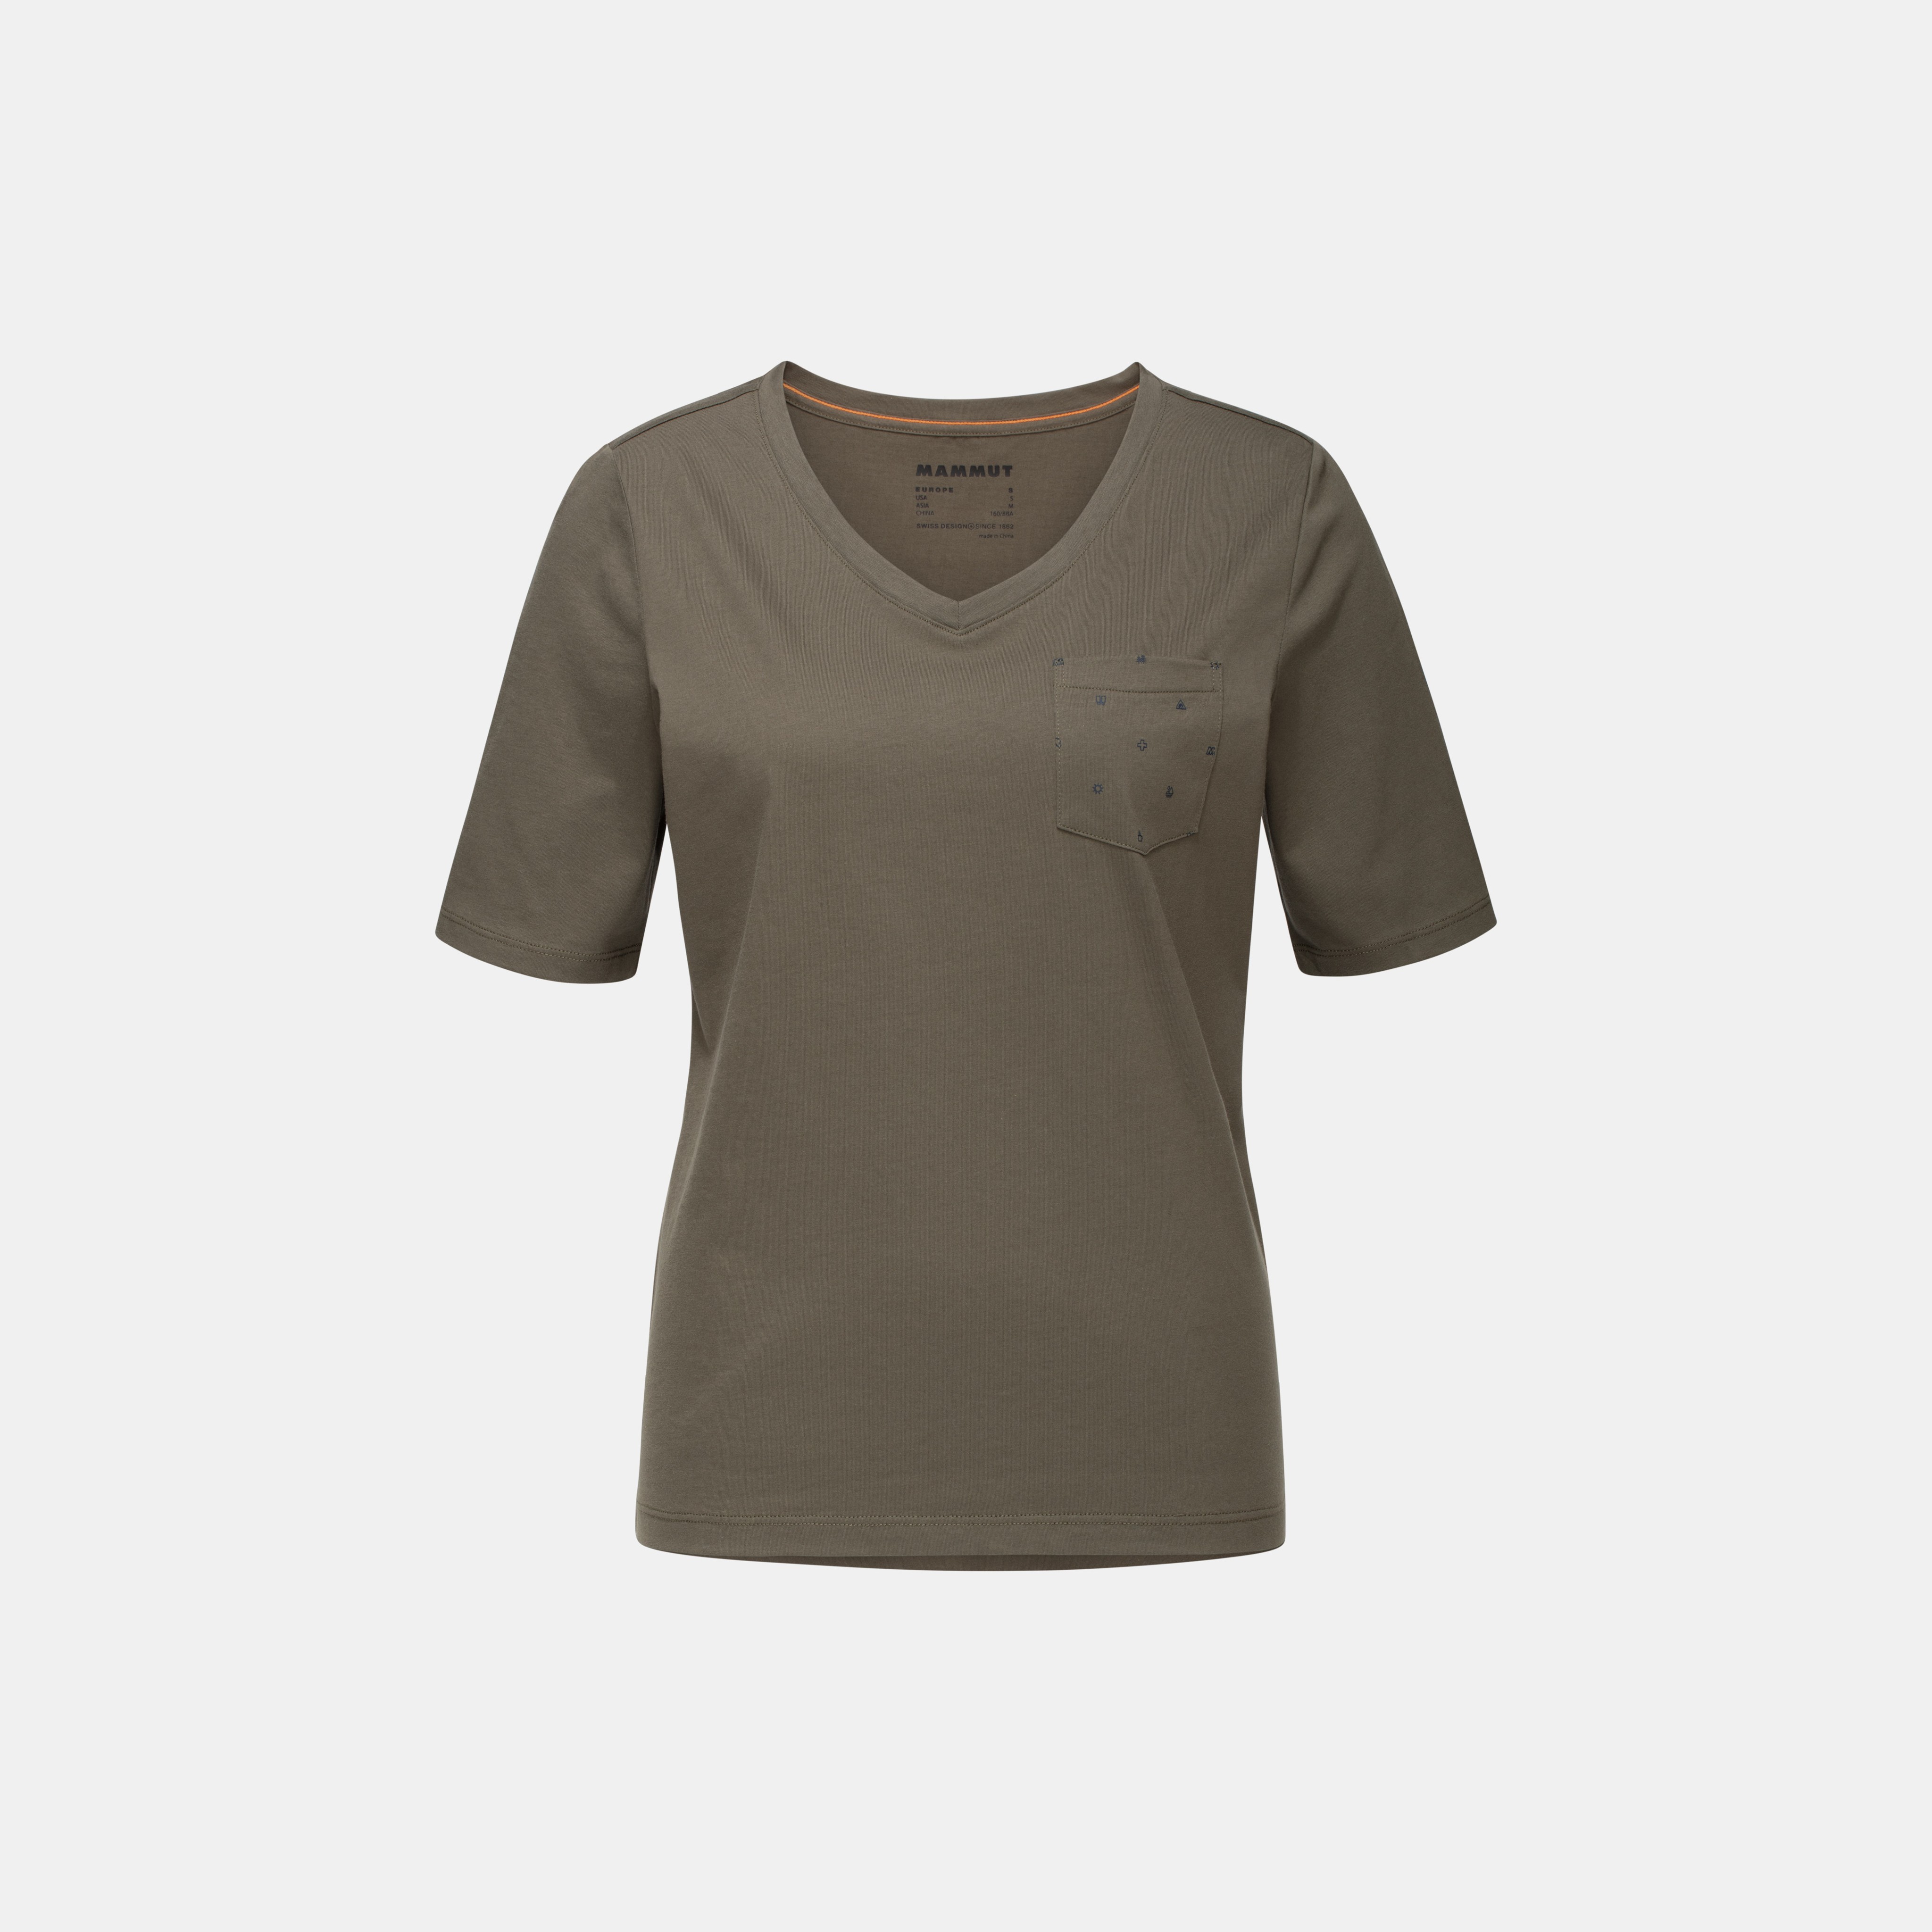 Mammut Pocket T-Shirt Women product image